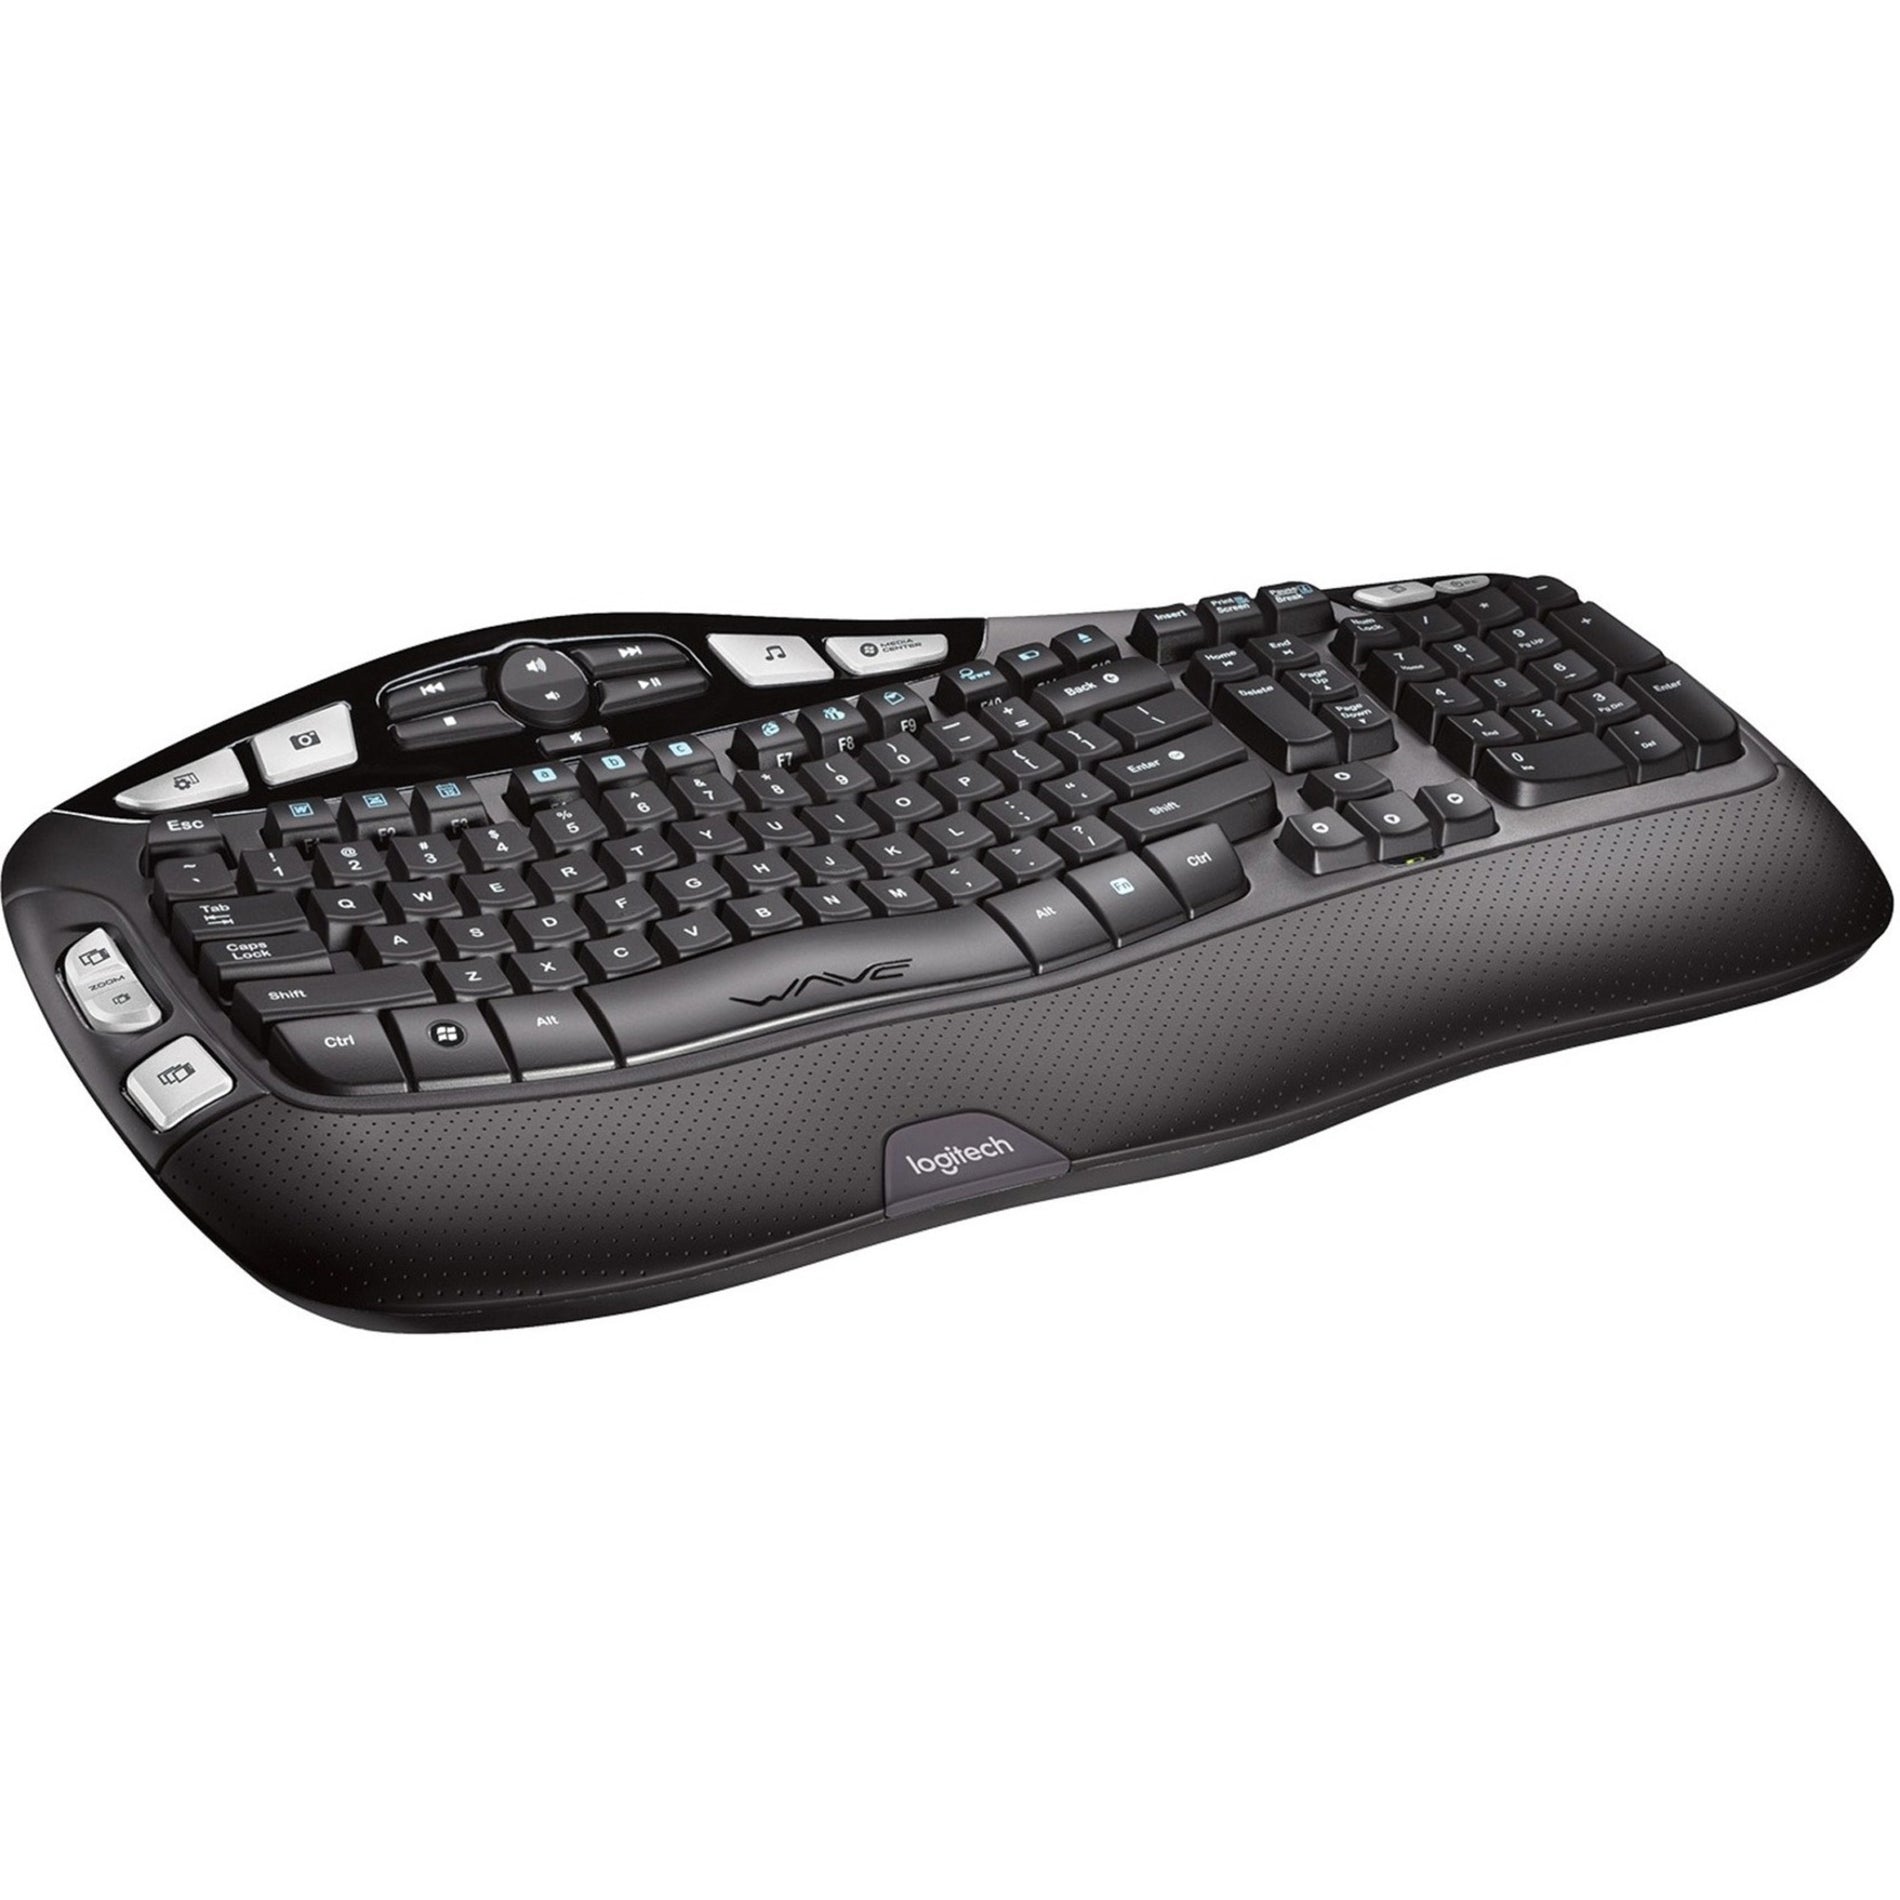 Logitech 920-001996 K350 Wireless Keyboard, Split Layout, Palm Rest, USB Receiver, Software CD, 2 x AA Batteries